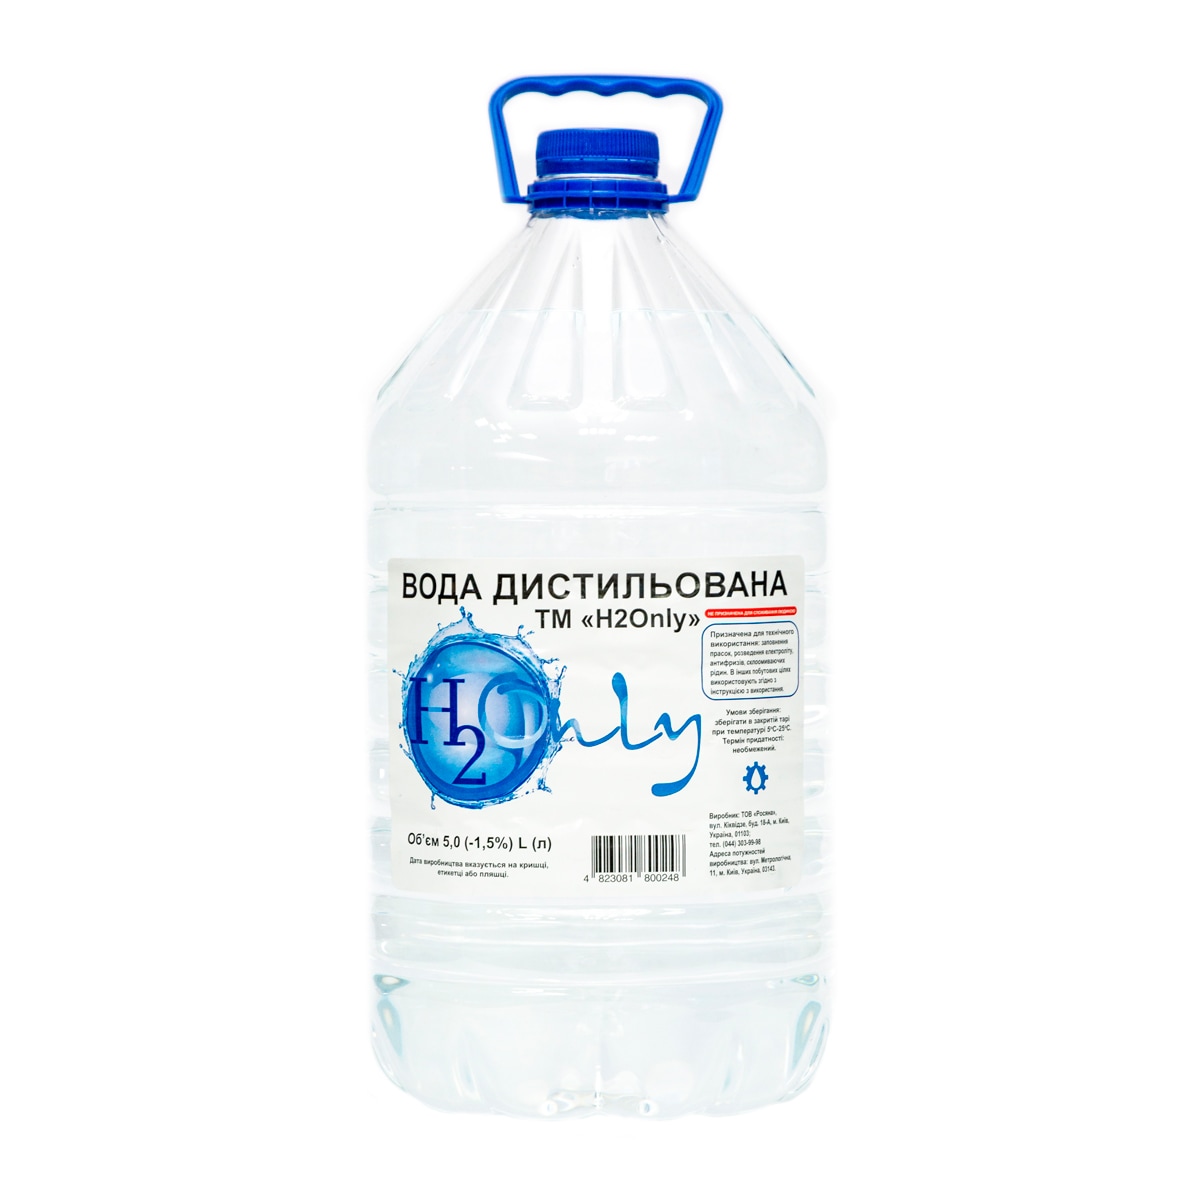 Вода дистильована H2Only™ 5л - доставка воды - rosiana.ua - 380-44-303-999-3